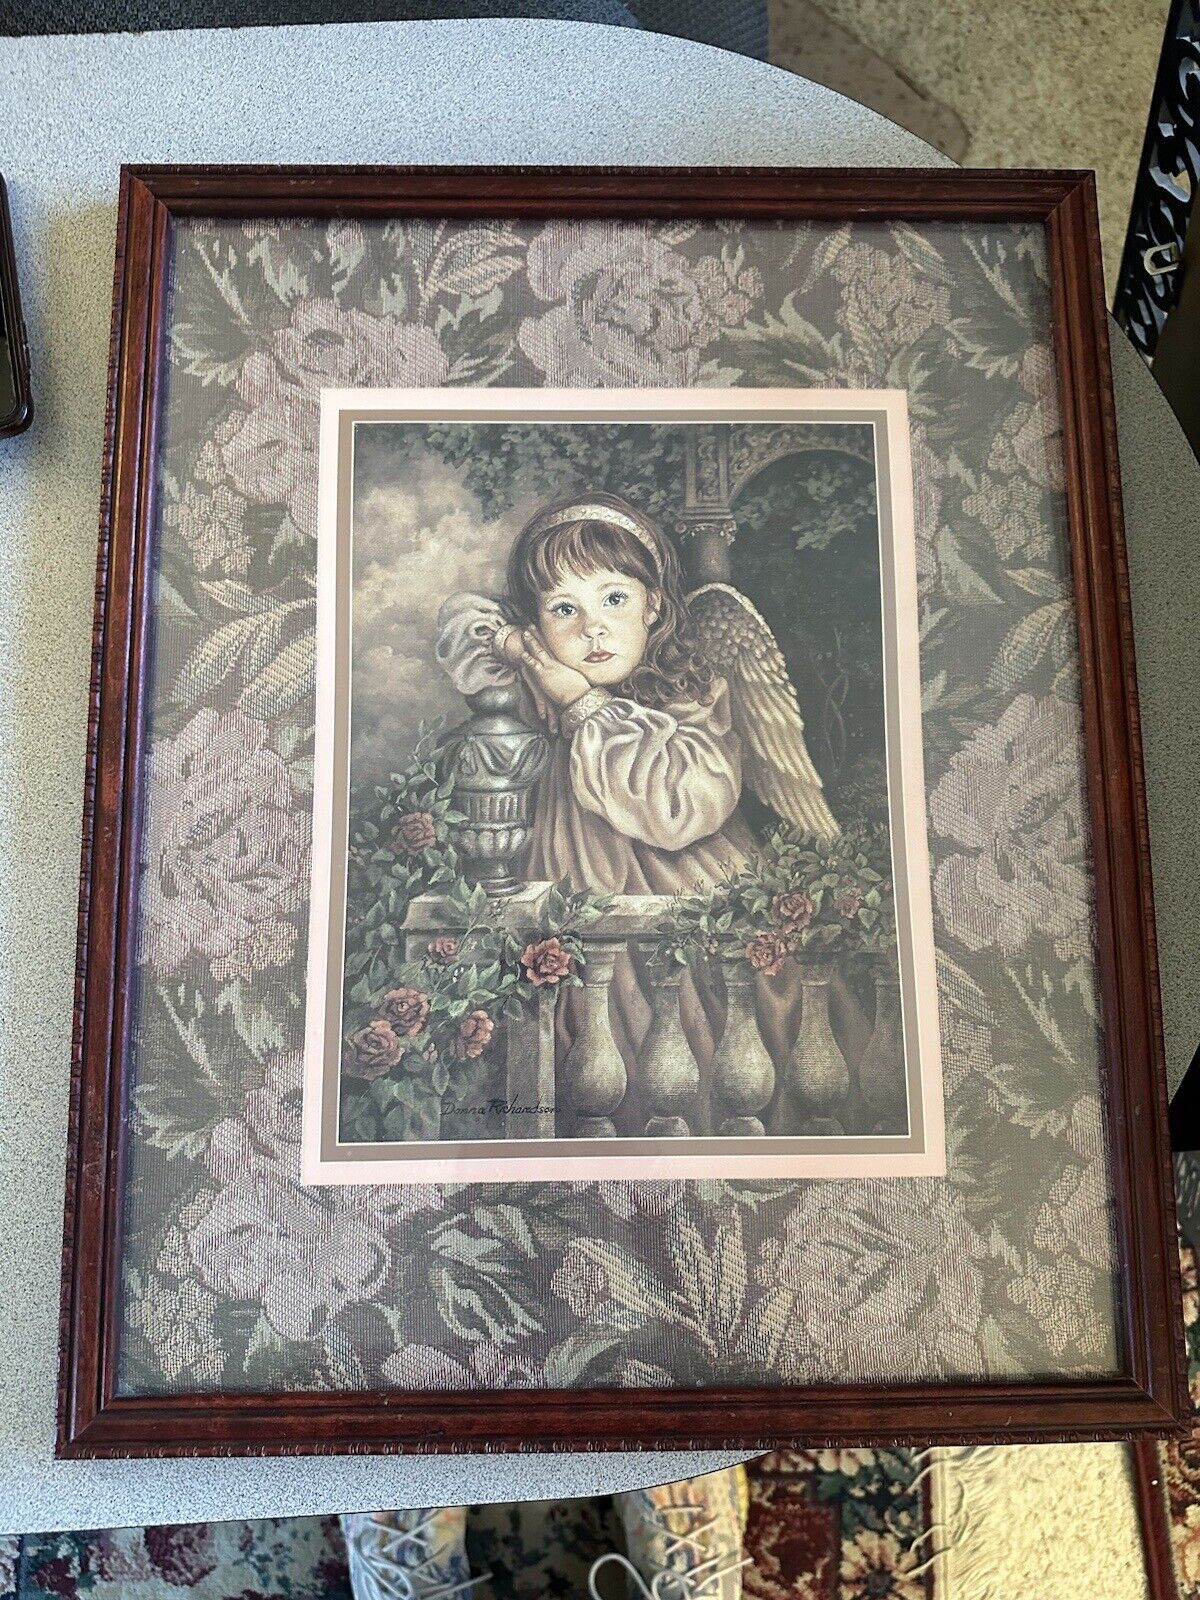 DONNA RICHARDSON GARDENS Of Innocence Framed Print Hope Little Girl Angel